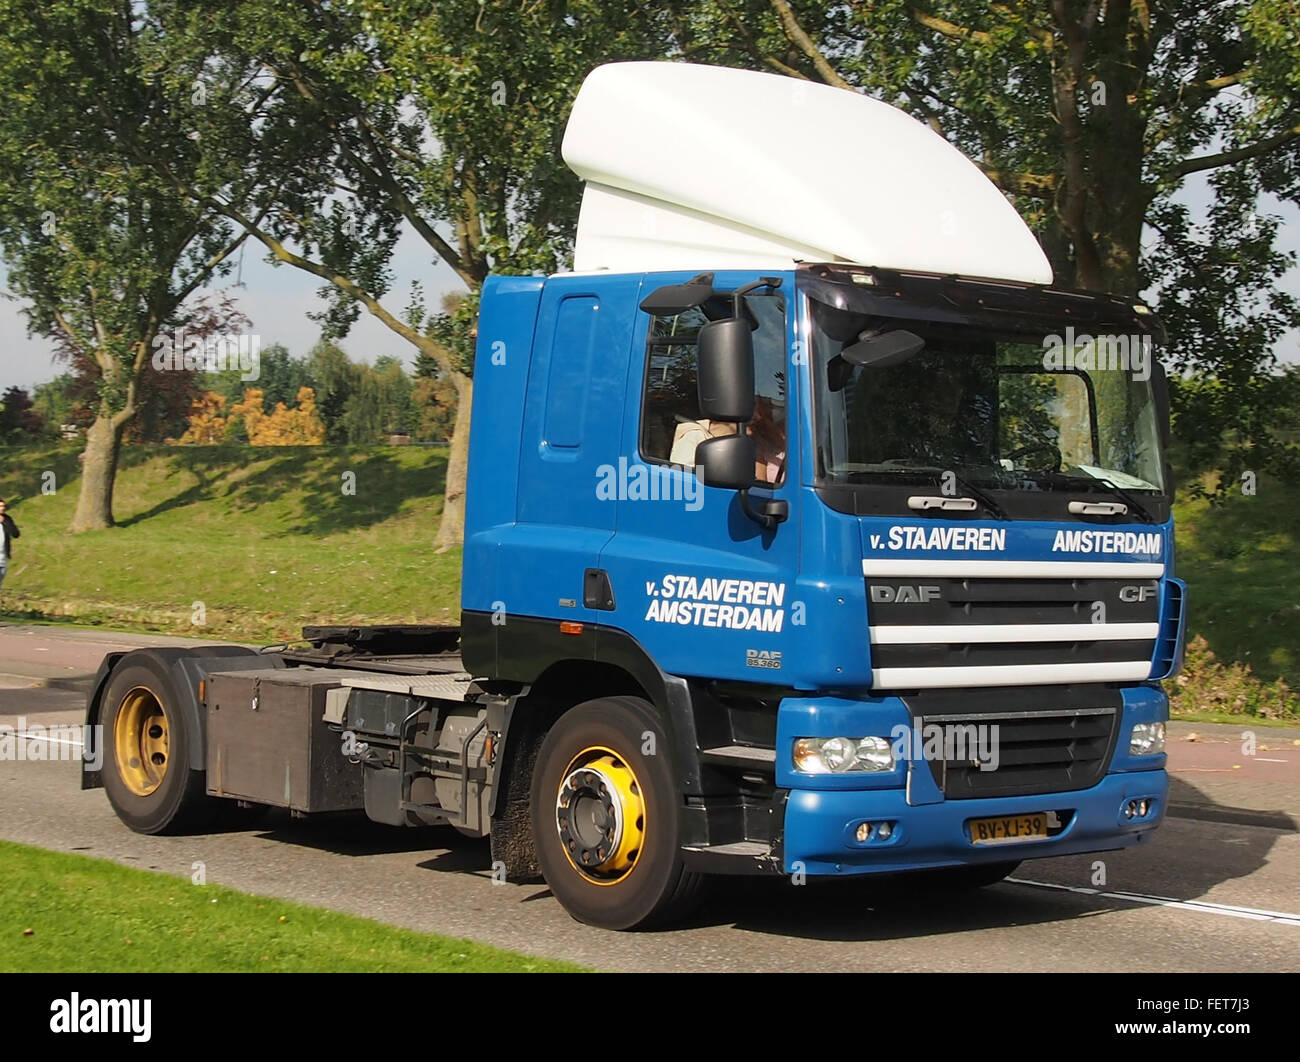 DAF CF truck, Van Staaveren Amsterdam Stock Photo